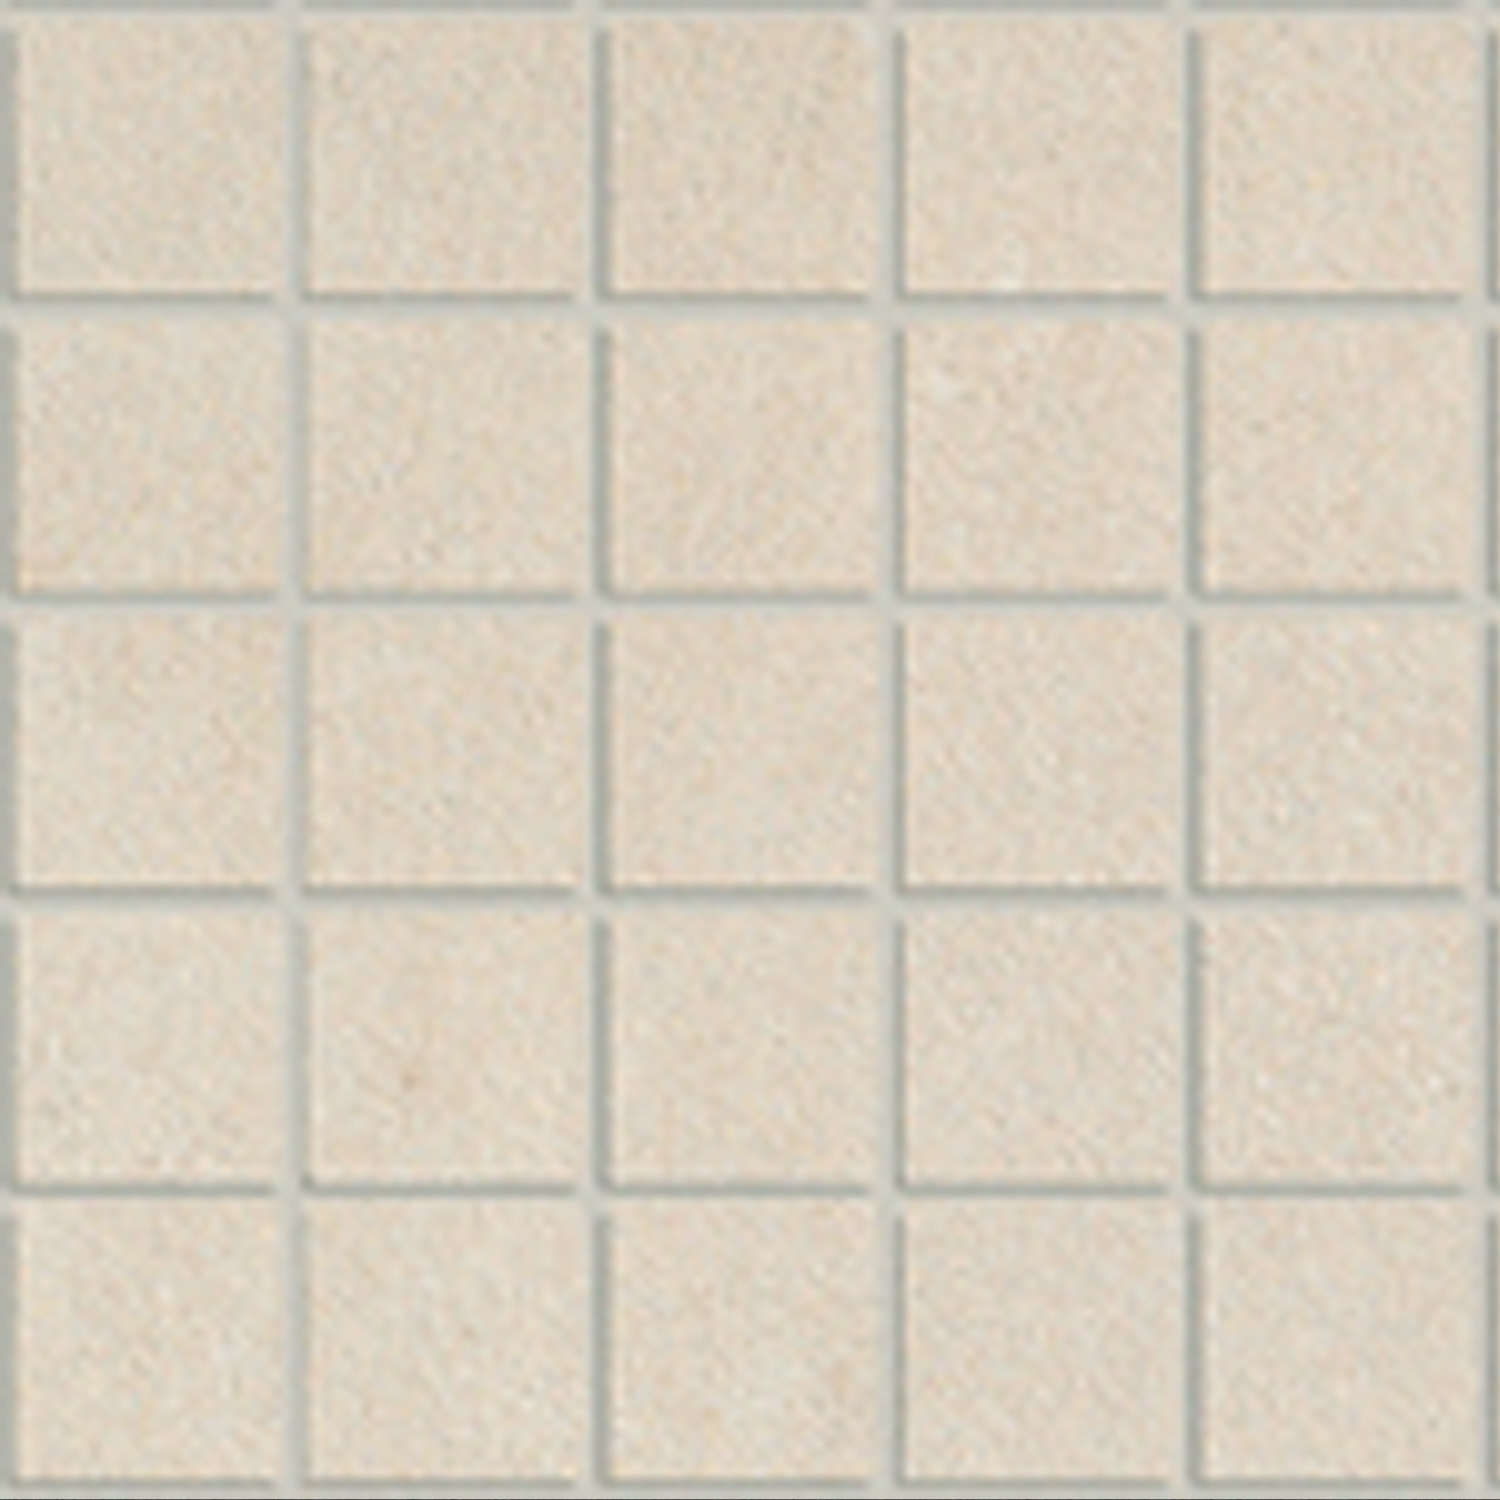 Starcrete Cotton Naturale 2"x2" (12"x12" Mosaic Sheet) | Color Body Porcelain | Floor/Wall Mosaic